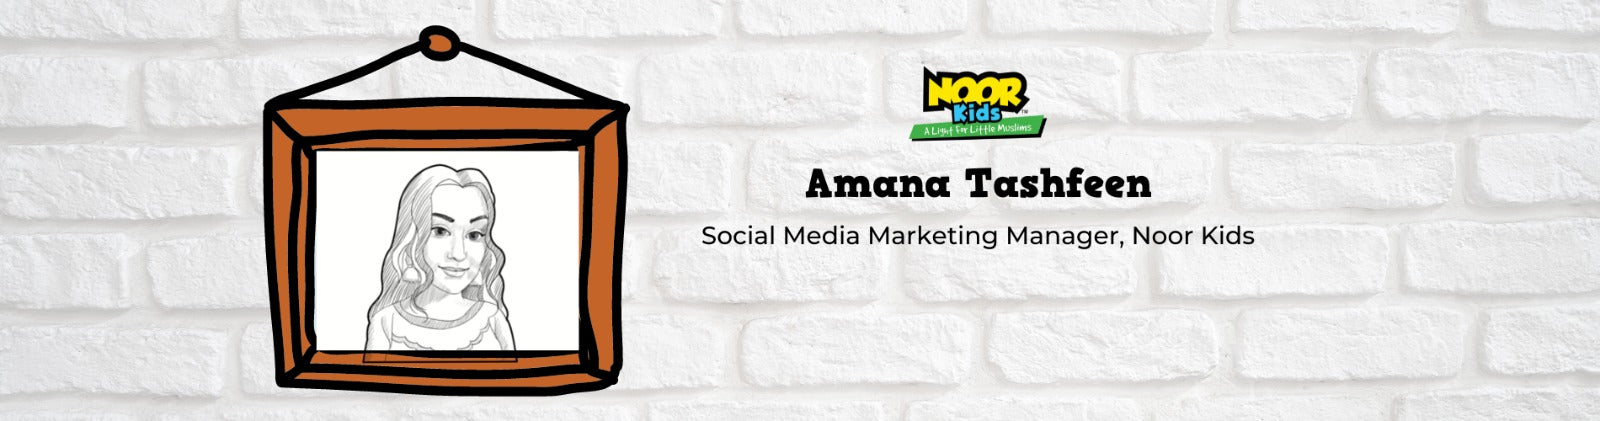 Meet Amana Tashfeen, Social Media Marketing Manager at Noor Kids